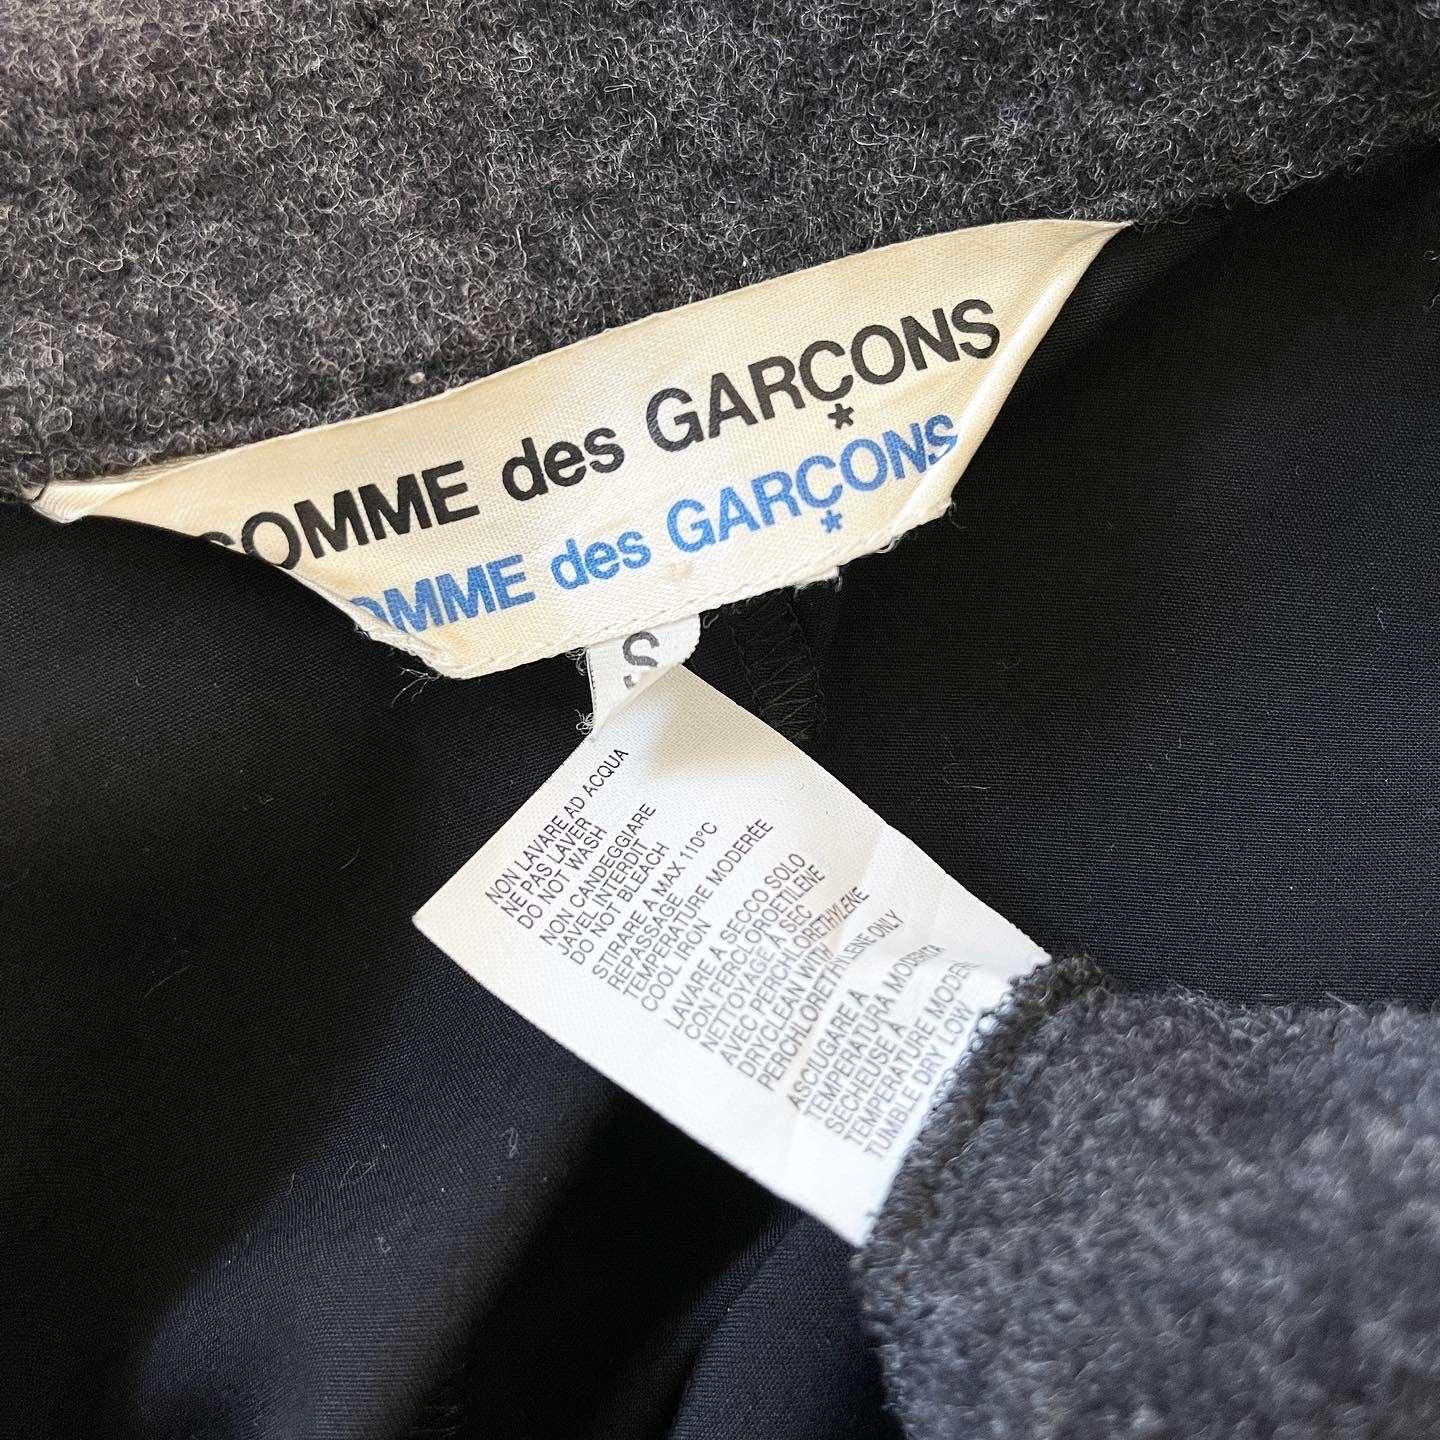 COMME DES GARCONS - COMME DES GARCONS Jacket - AVVIIVVA.COM